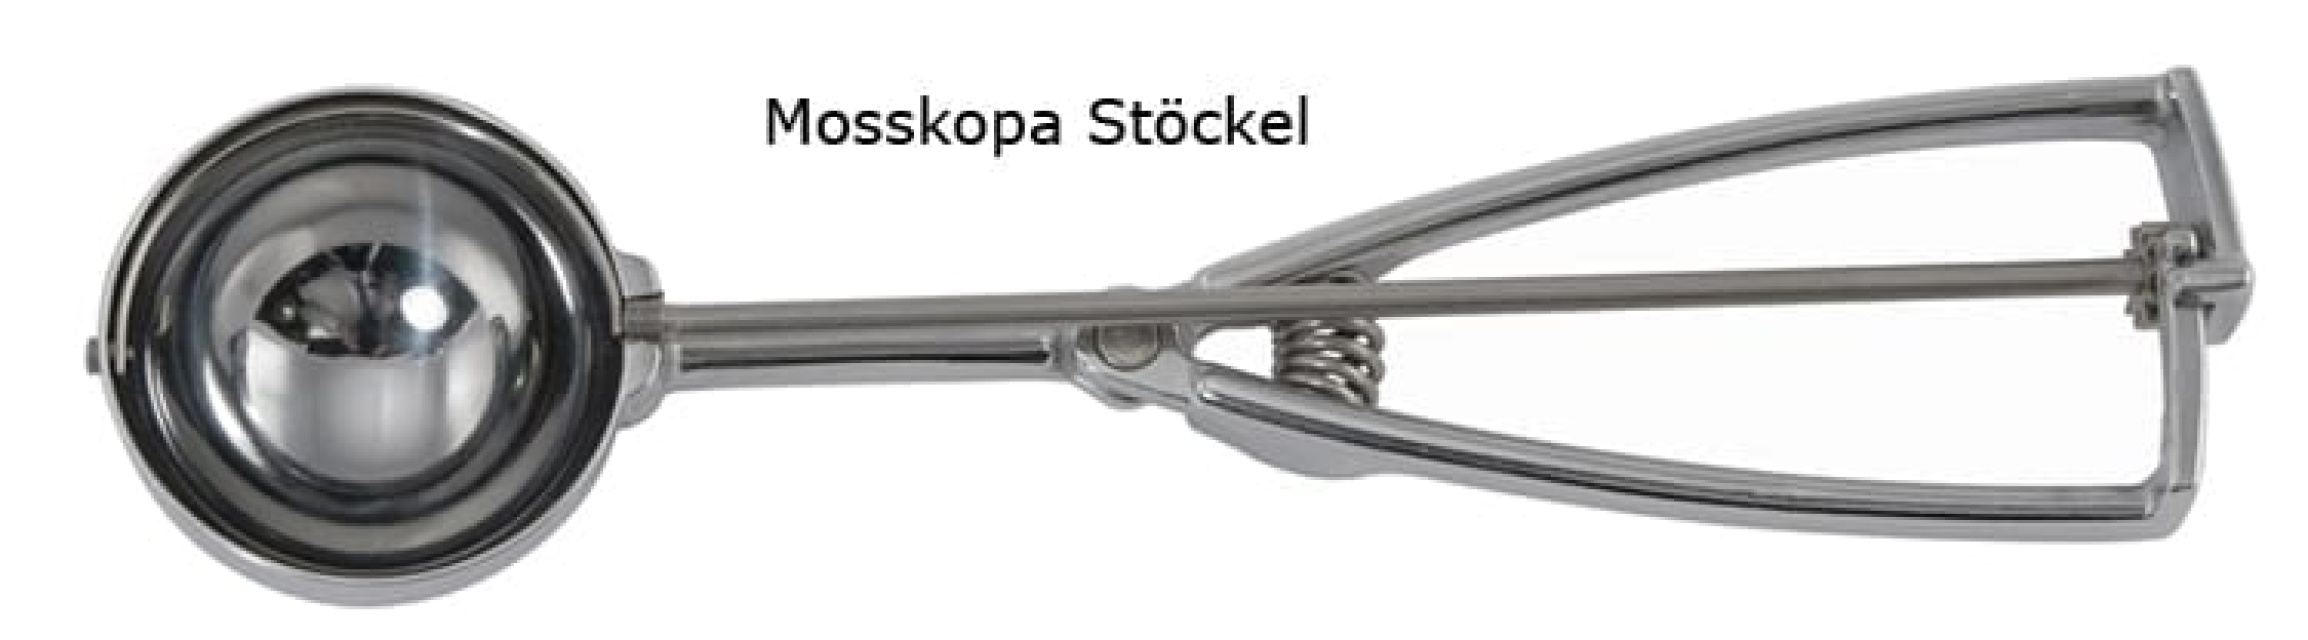 Mosskopa Stöckel